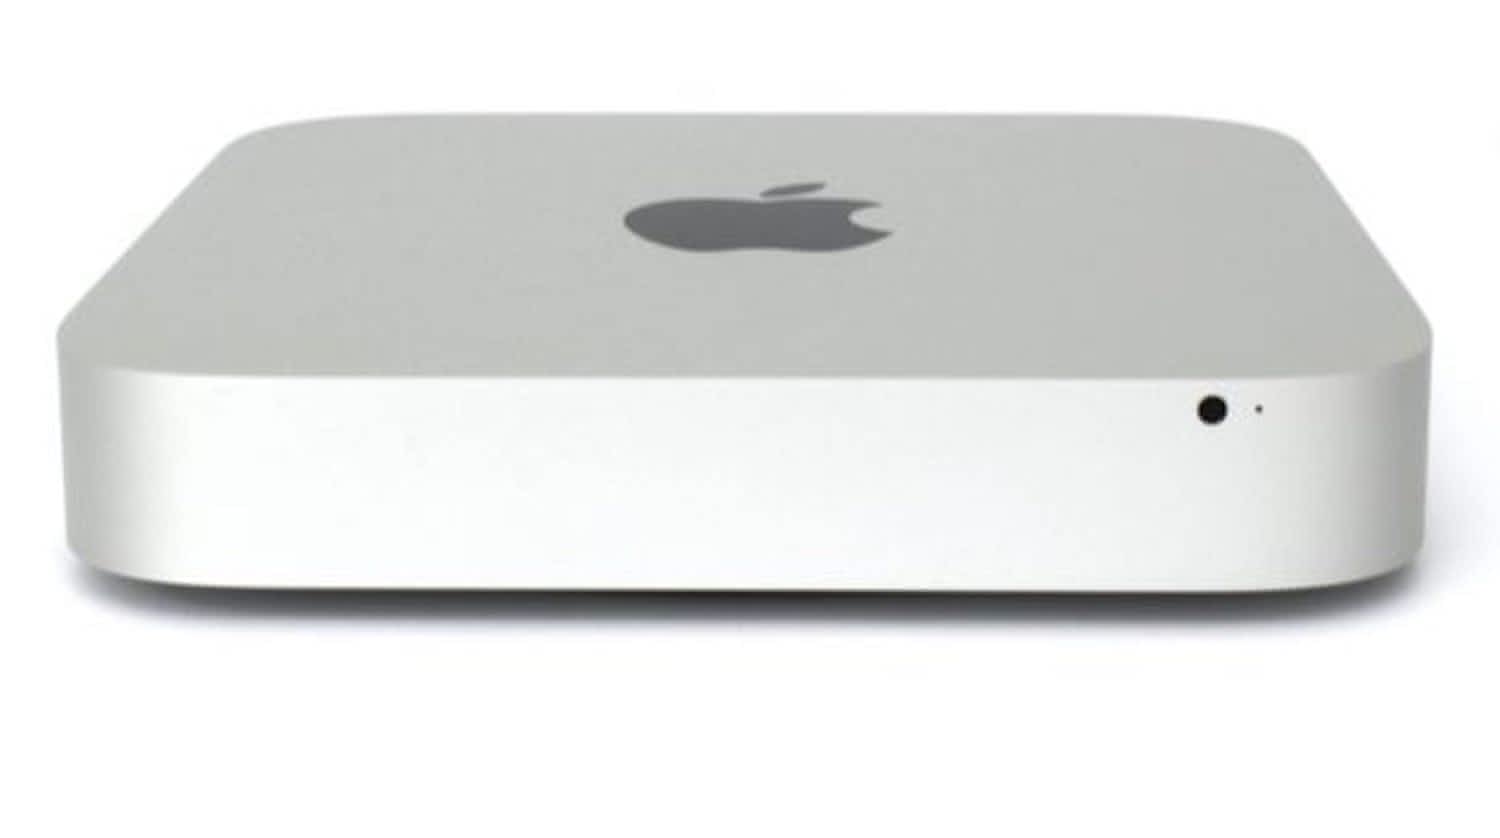 egpu for 2012 mac mini